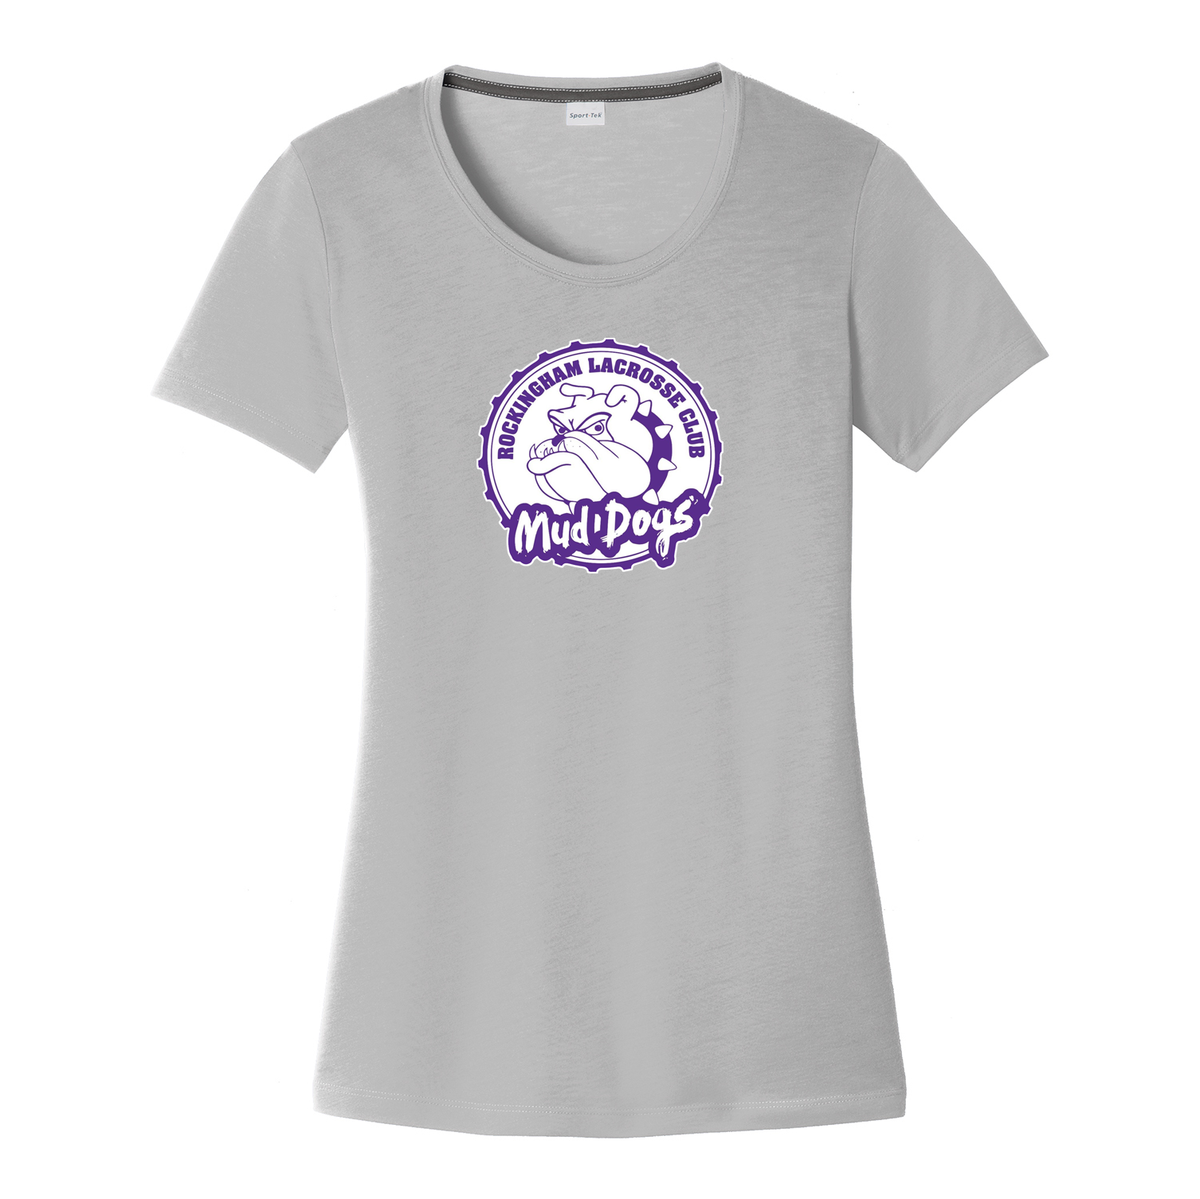 Rockingham Lacrosse Club Women's CottonTouch Performance T-Shirt